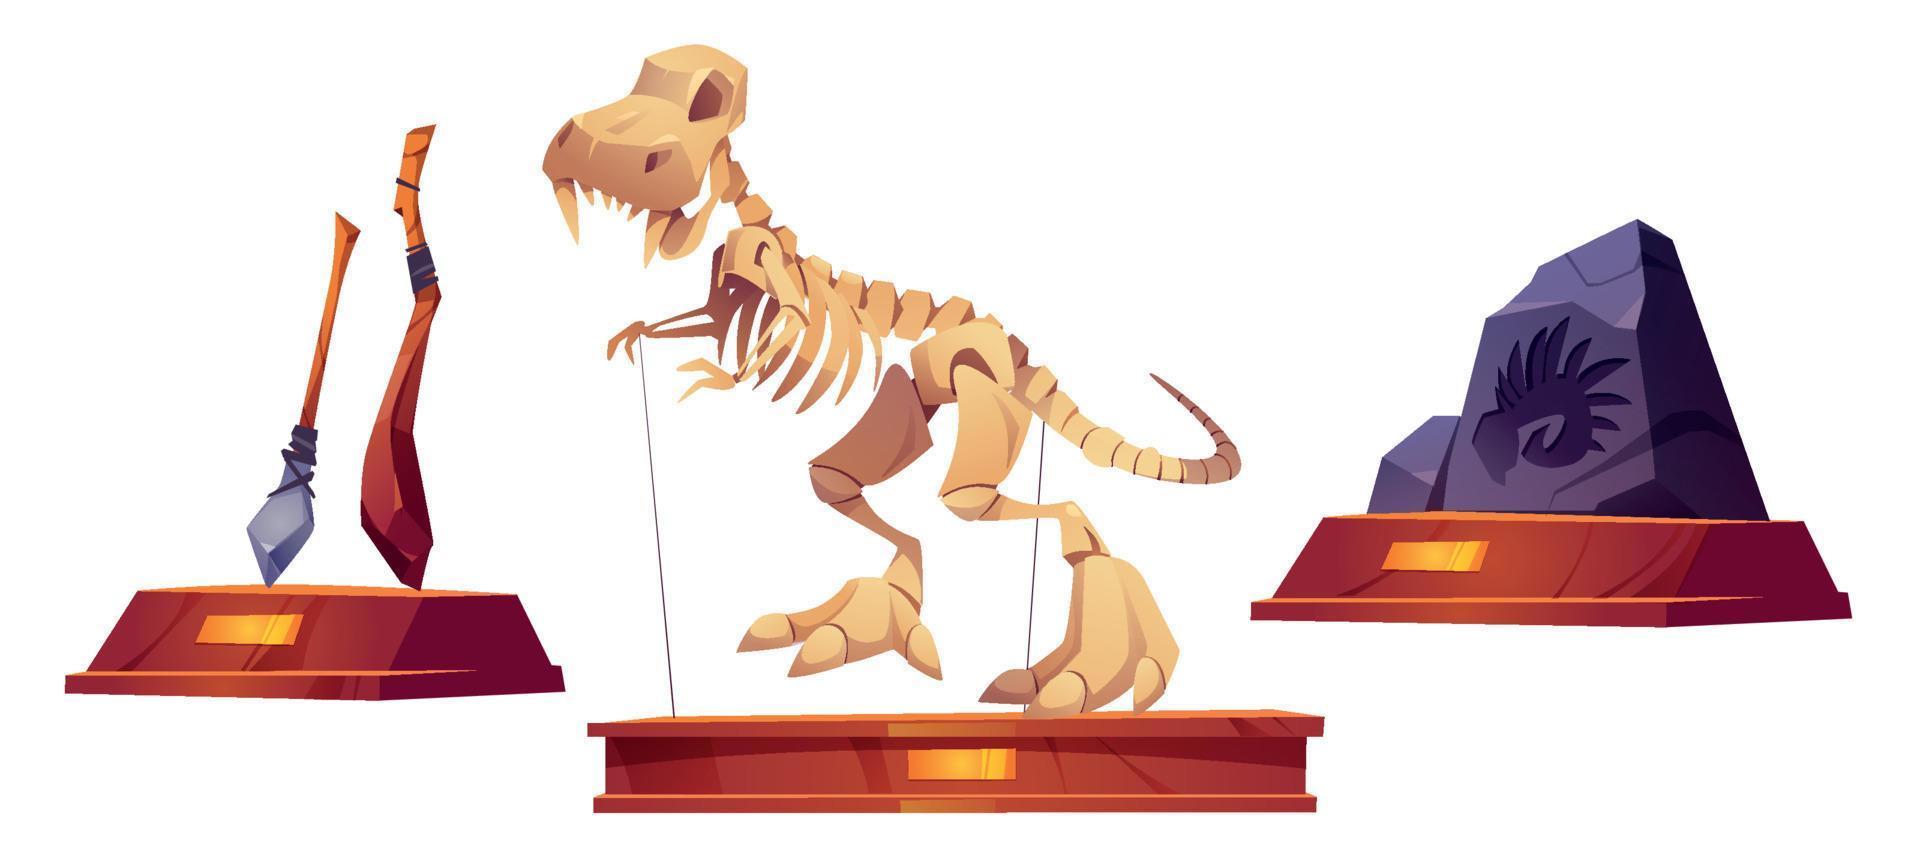 paleontologie museum voorwerpen exposities artikelen, vindt. vector